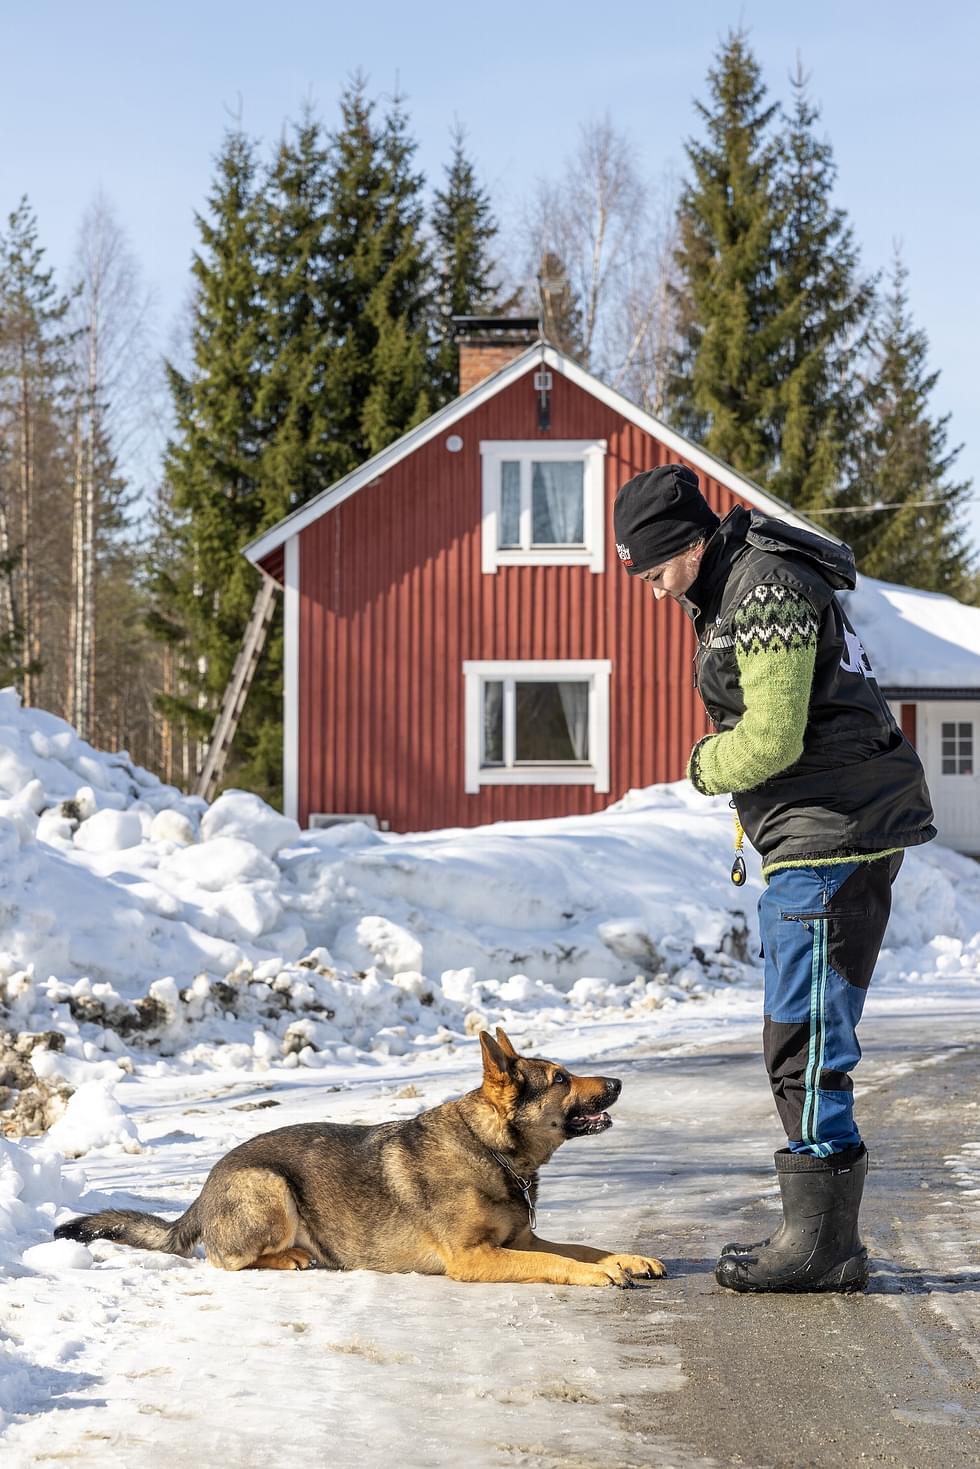 Ennen etsintää Johanna Ryynänen teettää koiralleen mentaaliharjoituksen, jossa se tiedostaa, että nyt aletaan etsiä avaimia. Harjoitteita tehdään ennen oikeaa etsintää.